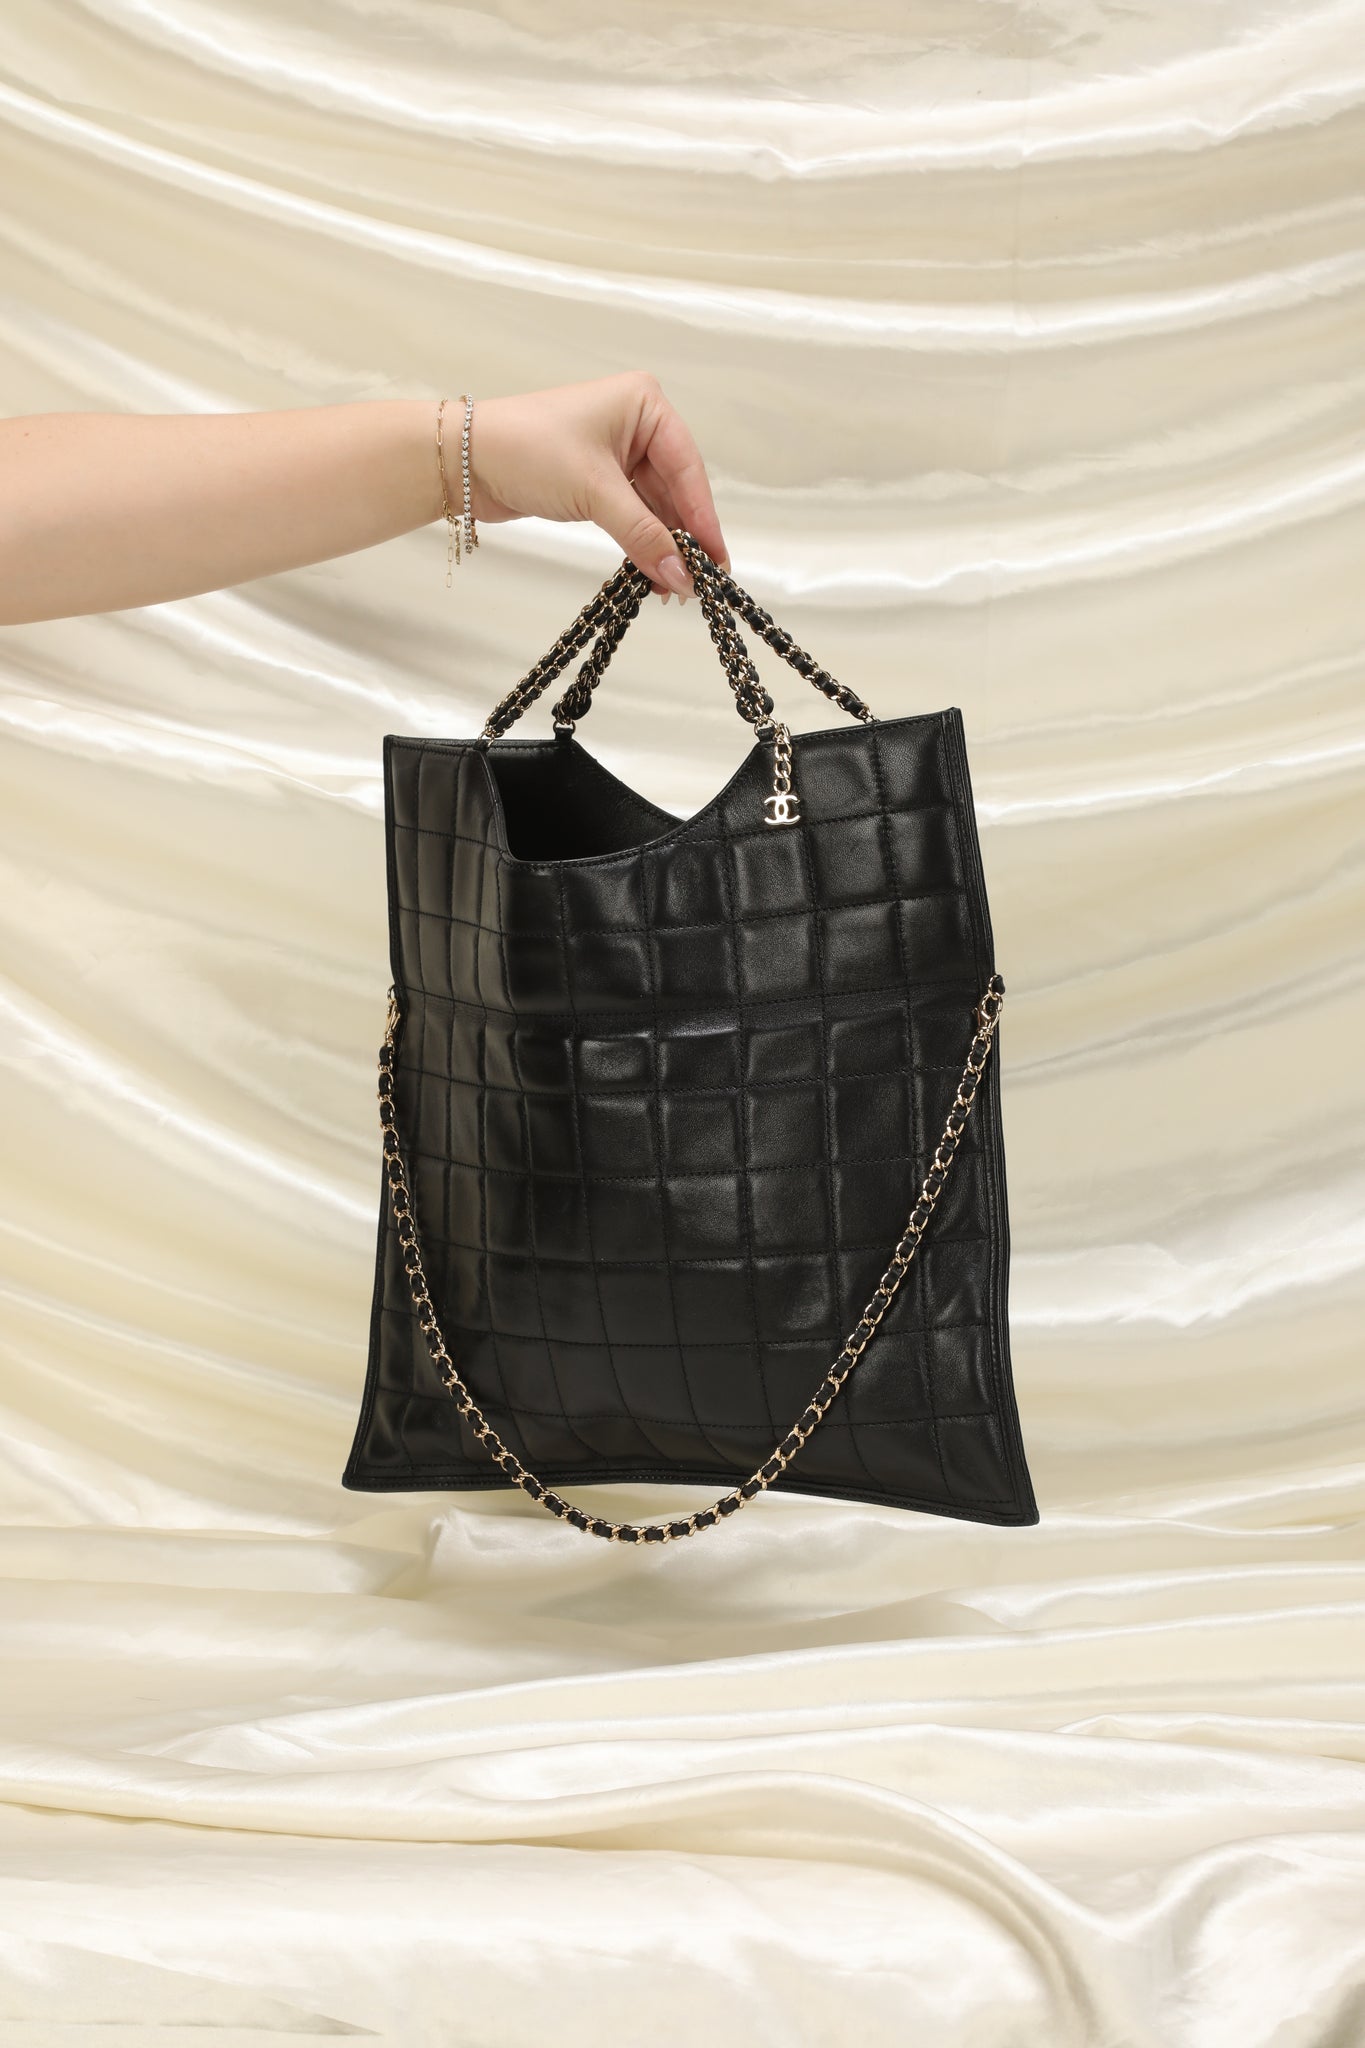 Chanel Black Quilted Lambskin Envelope Flap Shoulder Bag